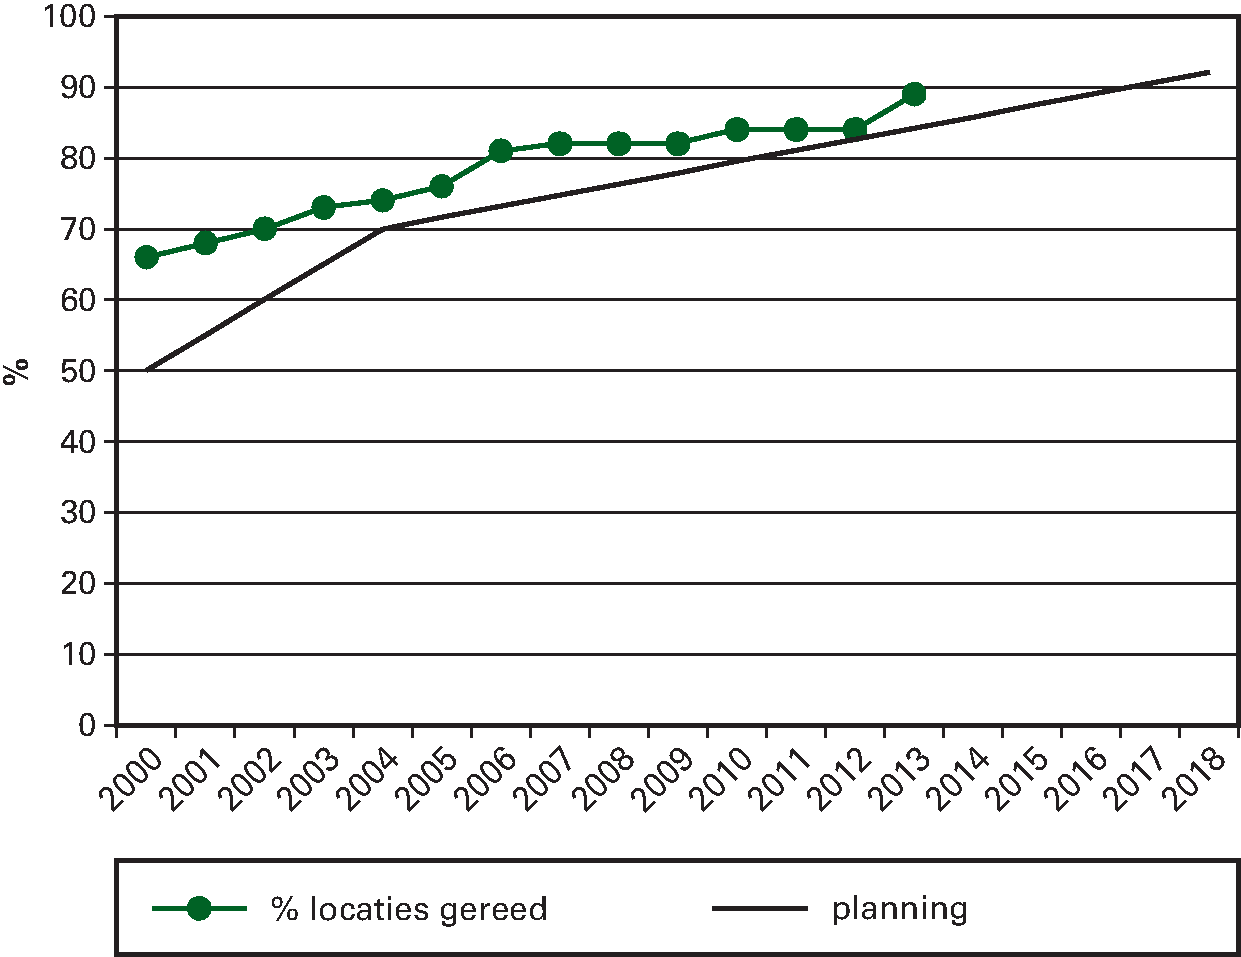 Figuur 4. Percentage locaties gereed van het bodemsaneringsprogramma van Defensie gerelateerd aan het lineaire verloop van het programma tussen 2000 en 2016